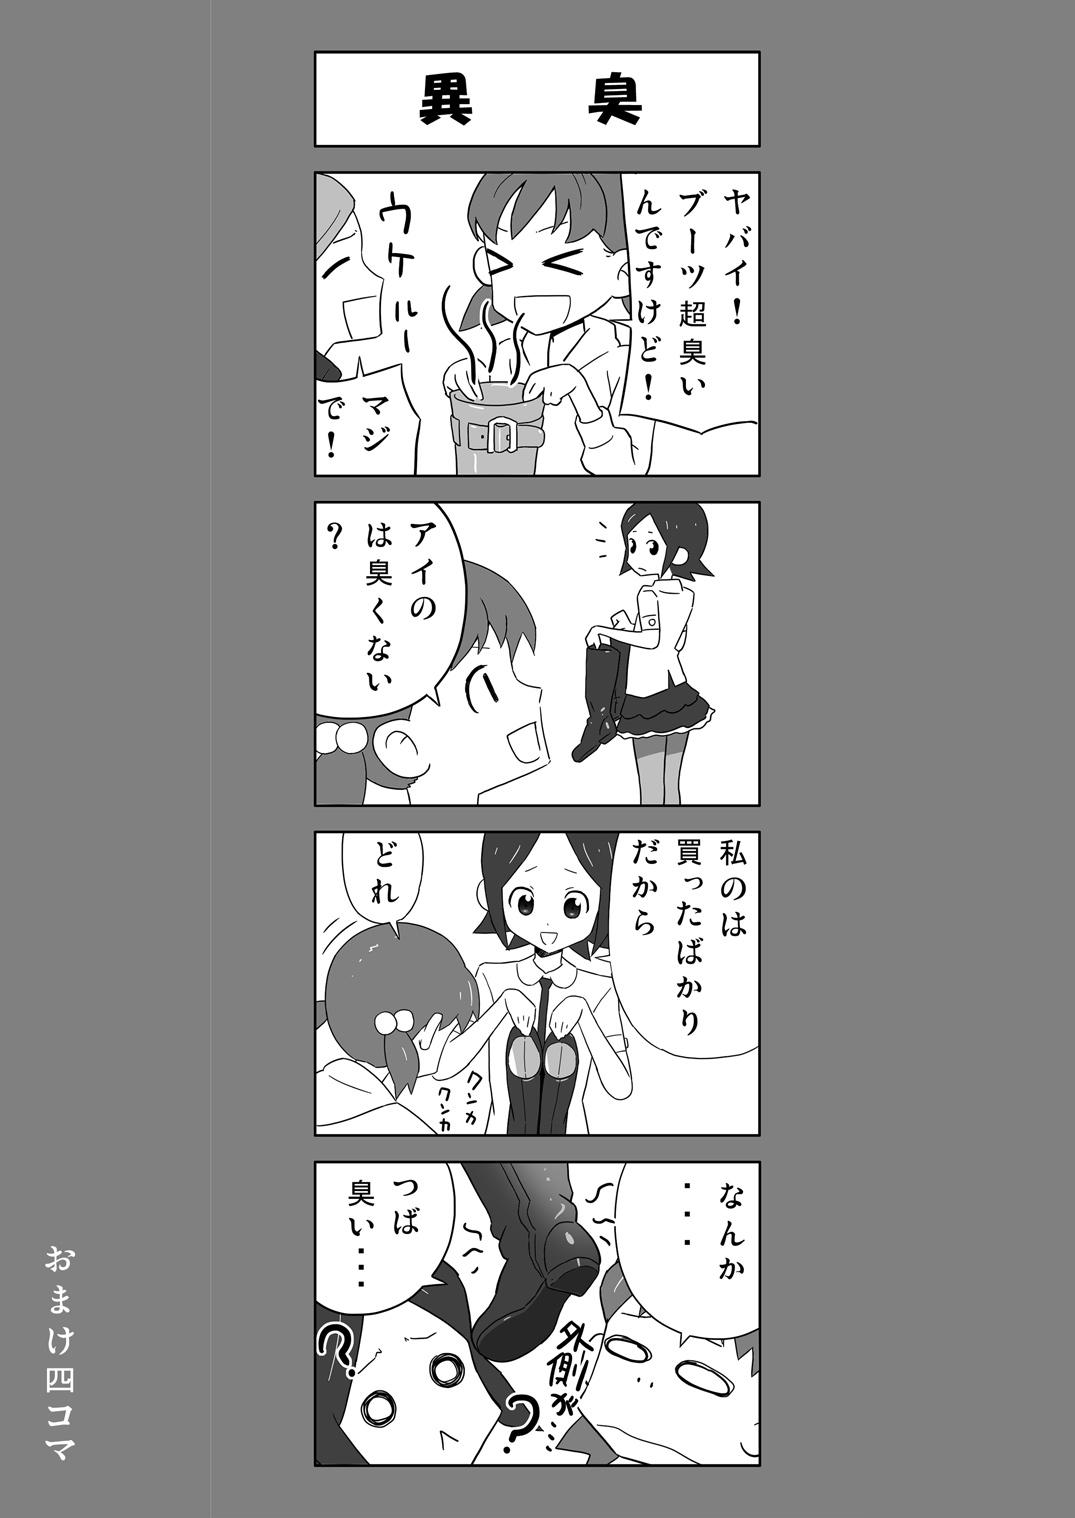 [Enka Boots] Enka Boots no Manga 1 - Juku no Sensei ga Joou-sama [Digital] 2